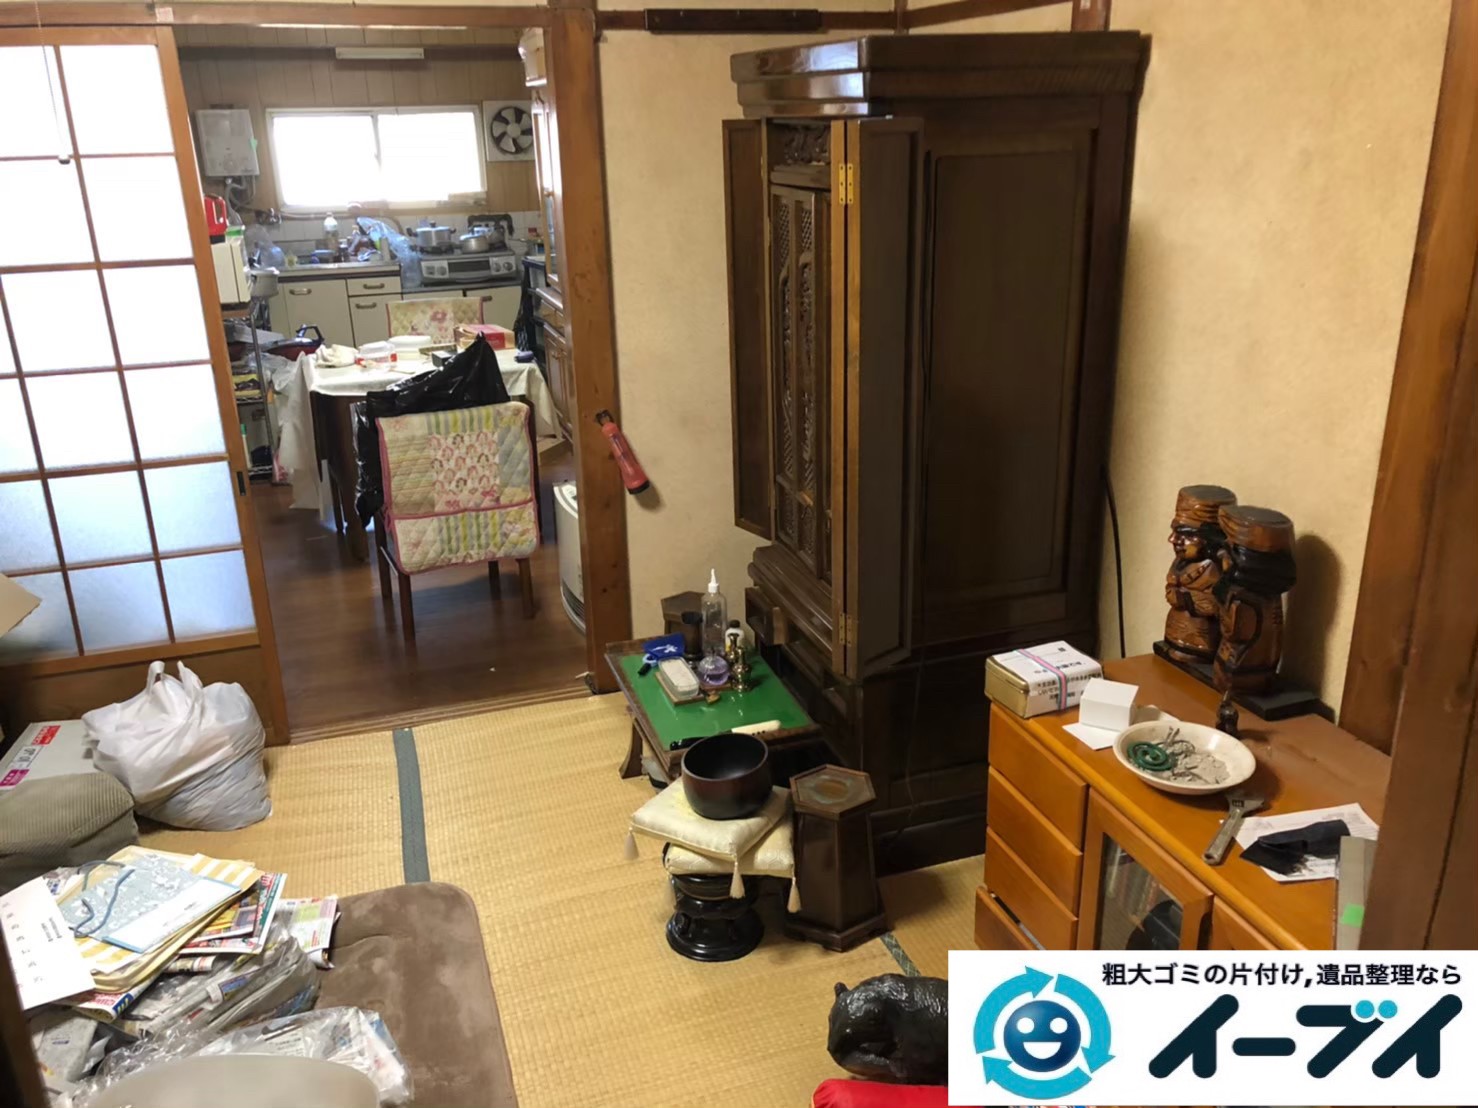 2020年６月４日大阪府大阪市島本町で粗大ゴミから生活用品まで、お家の家財道具一式処分させていただきました。写真1